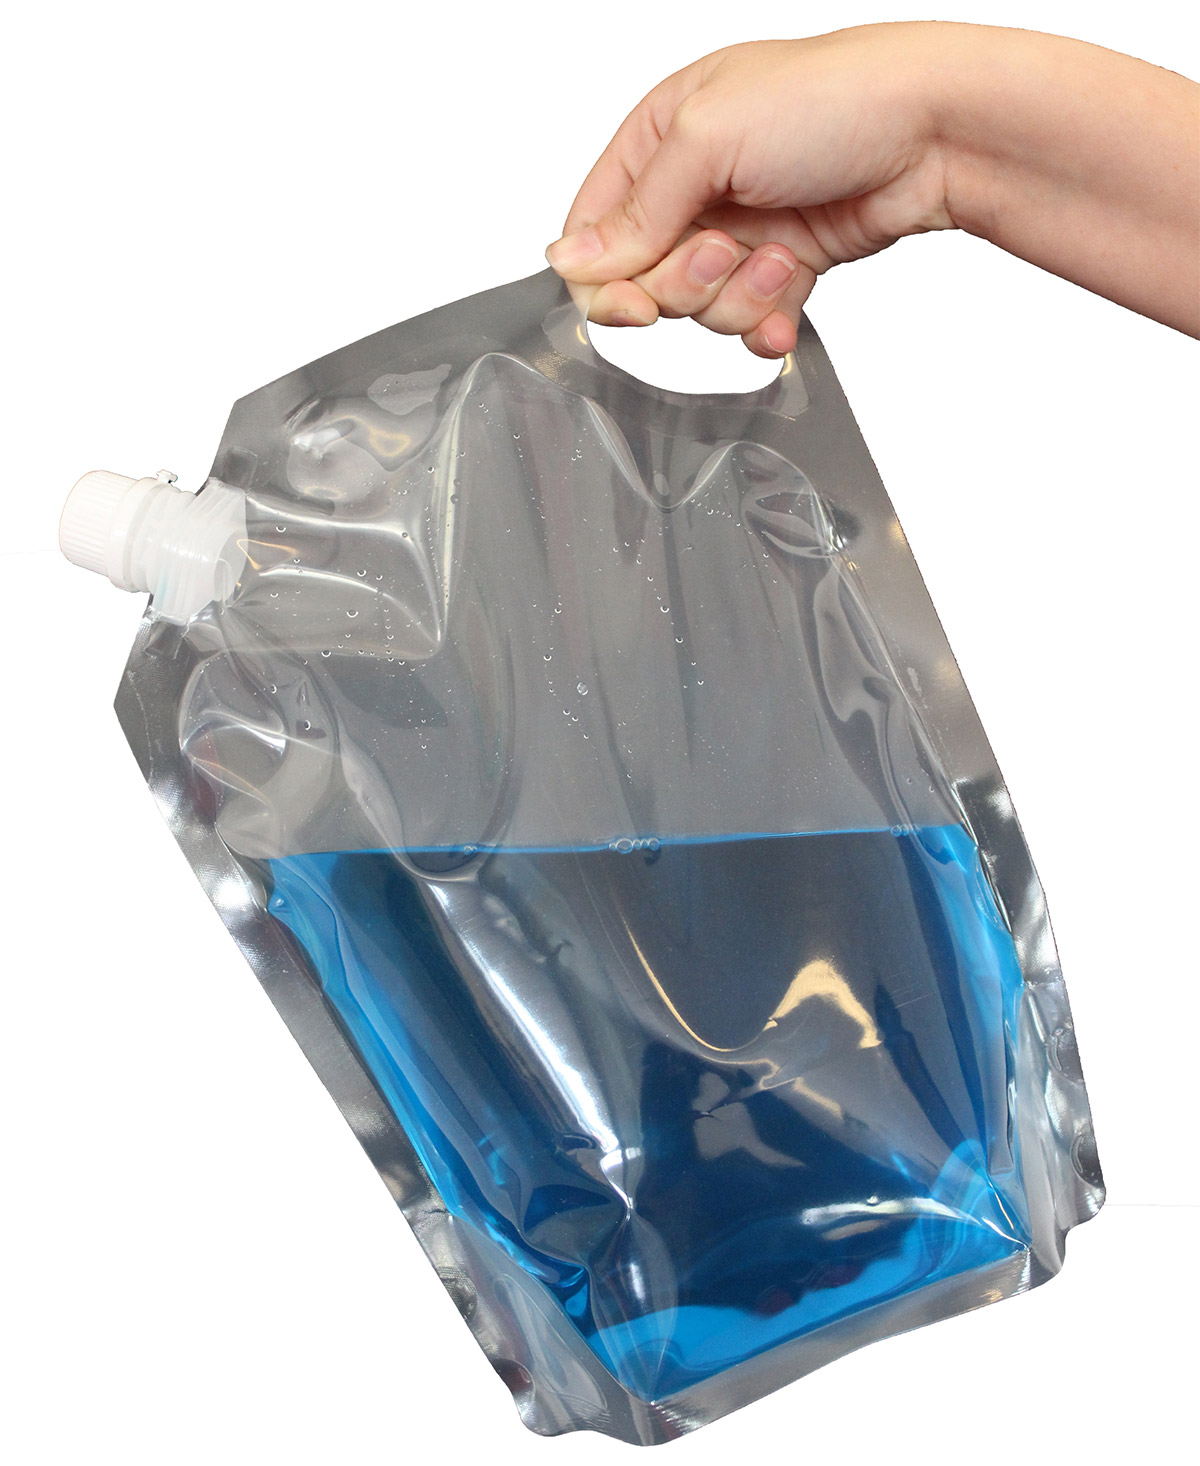 Сок можно выпить из герметичного пакета проткнув. Пакет для жидкости. Пластиковый пакет. Пластиковый мешок для воды. Герметичные пакеты для воды.